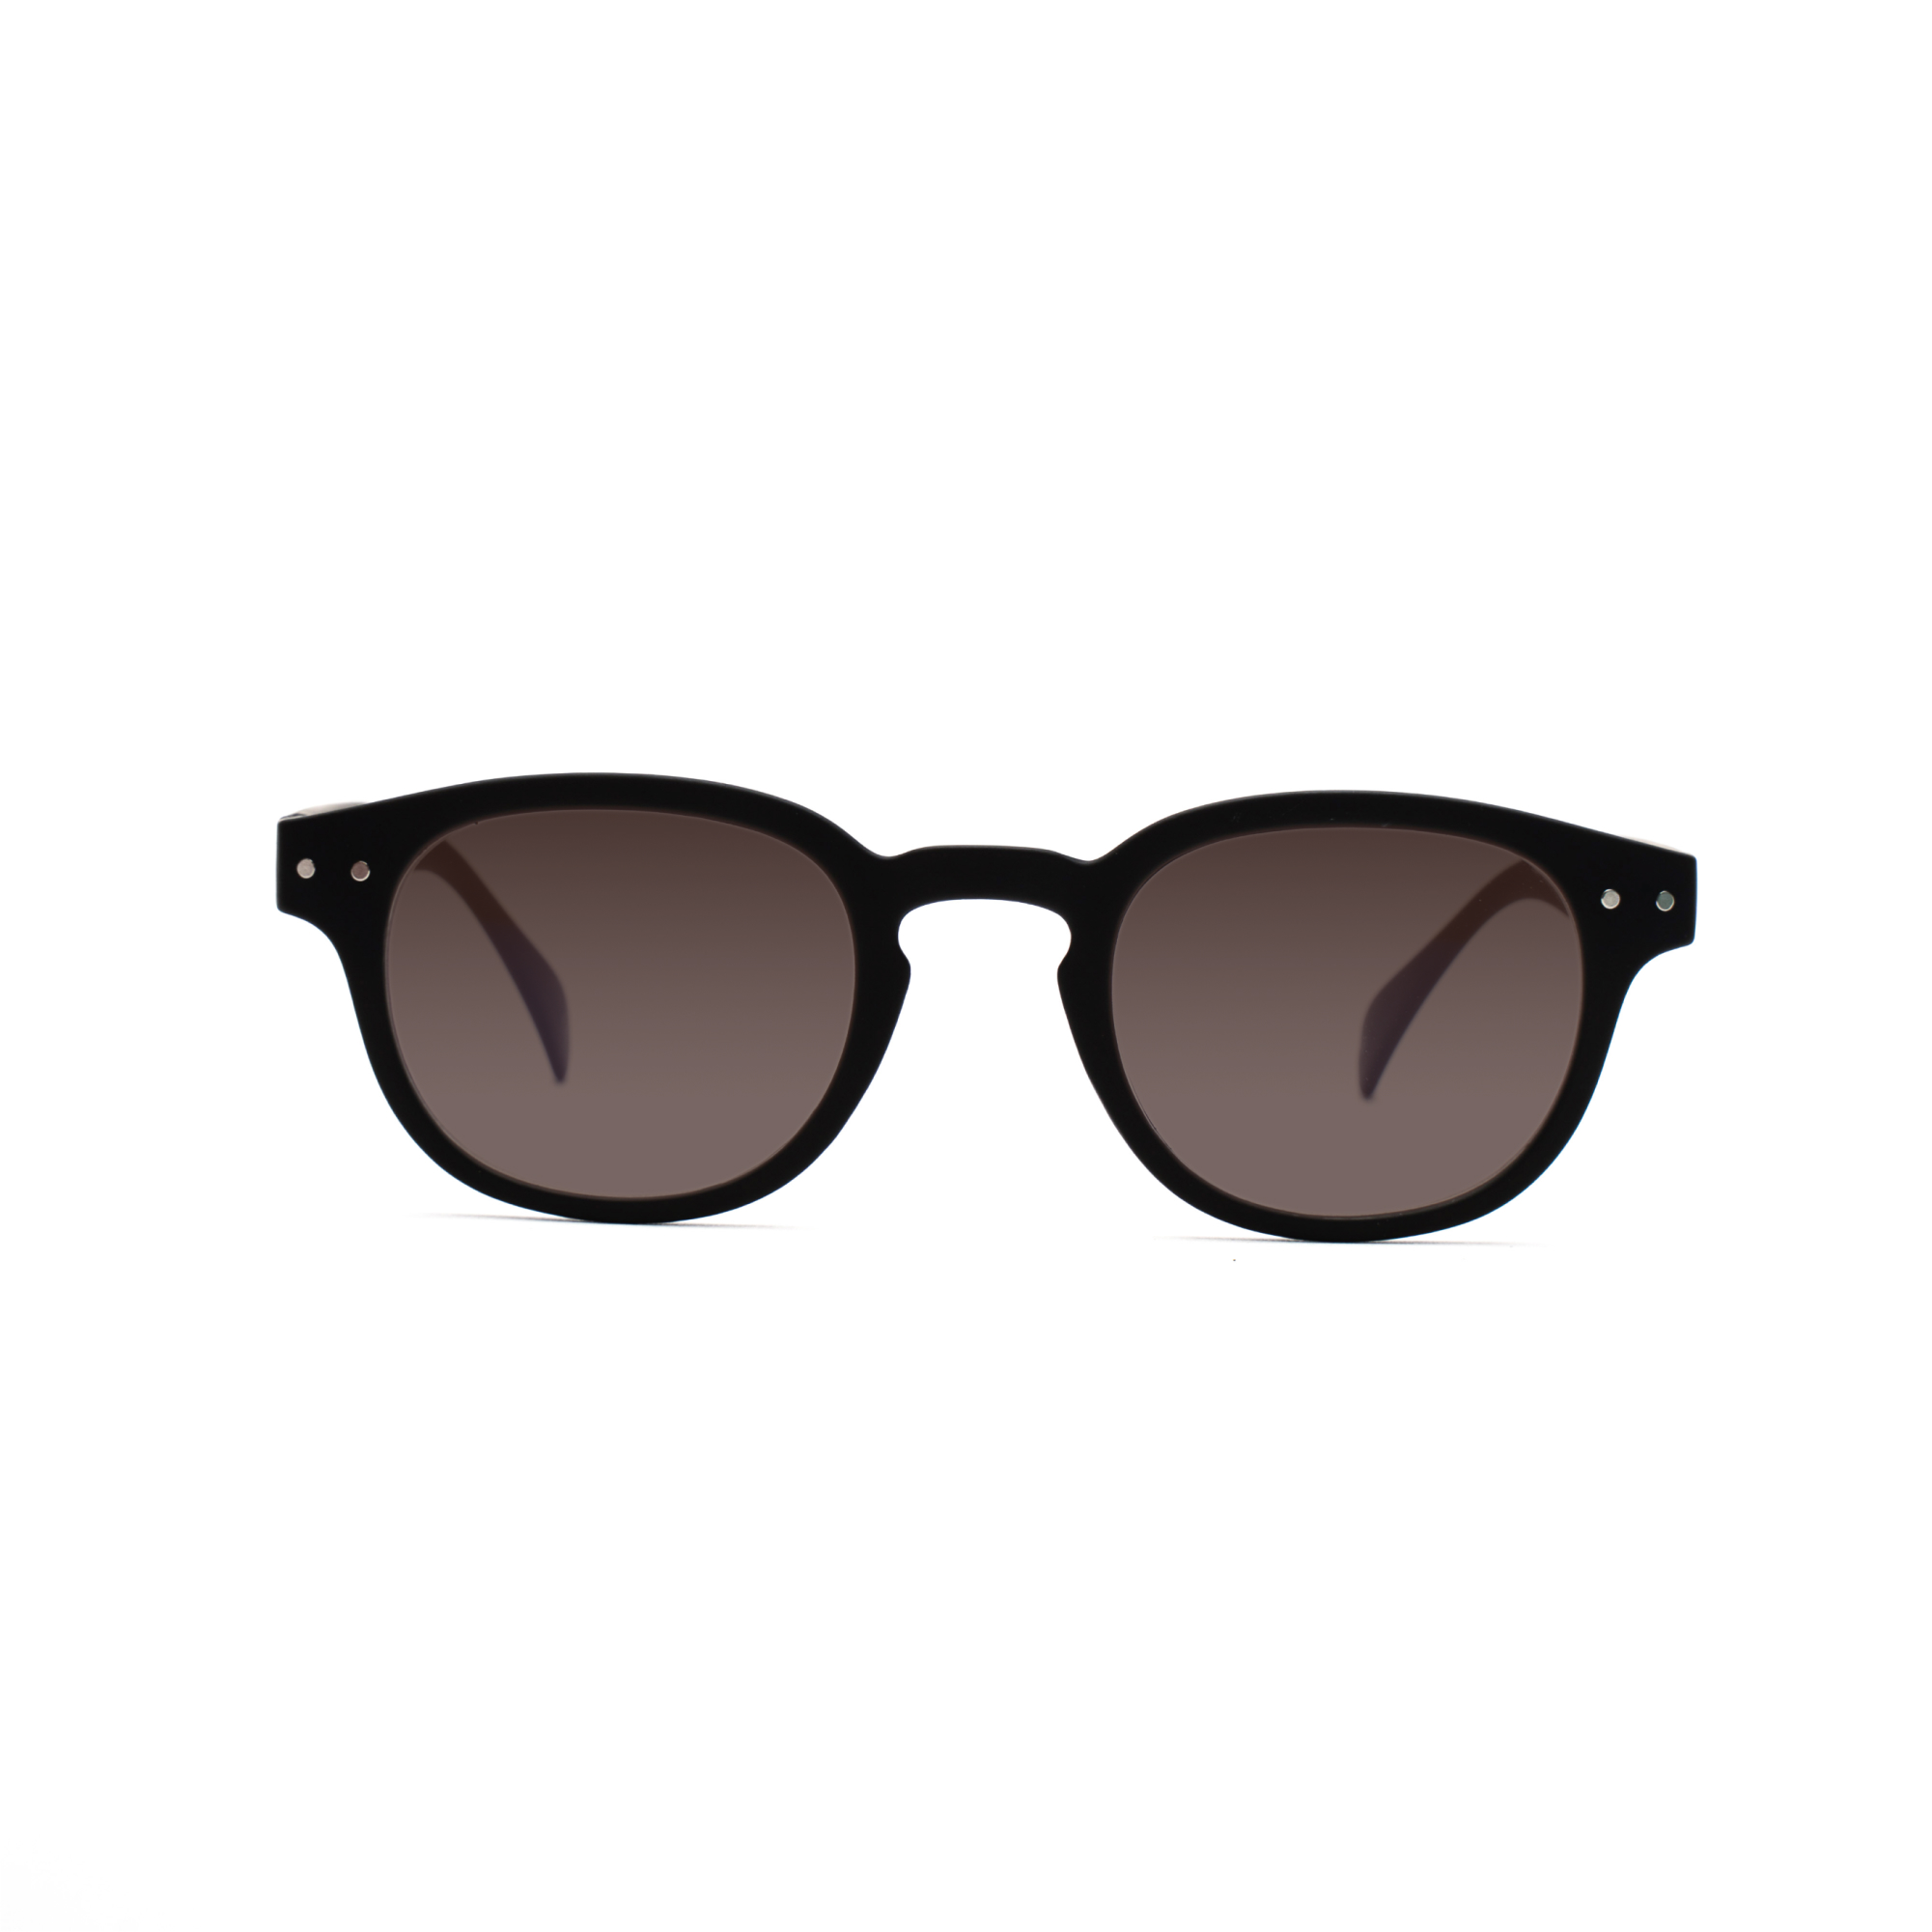 men's sunglasses – Anton UVSUN m - Black